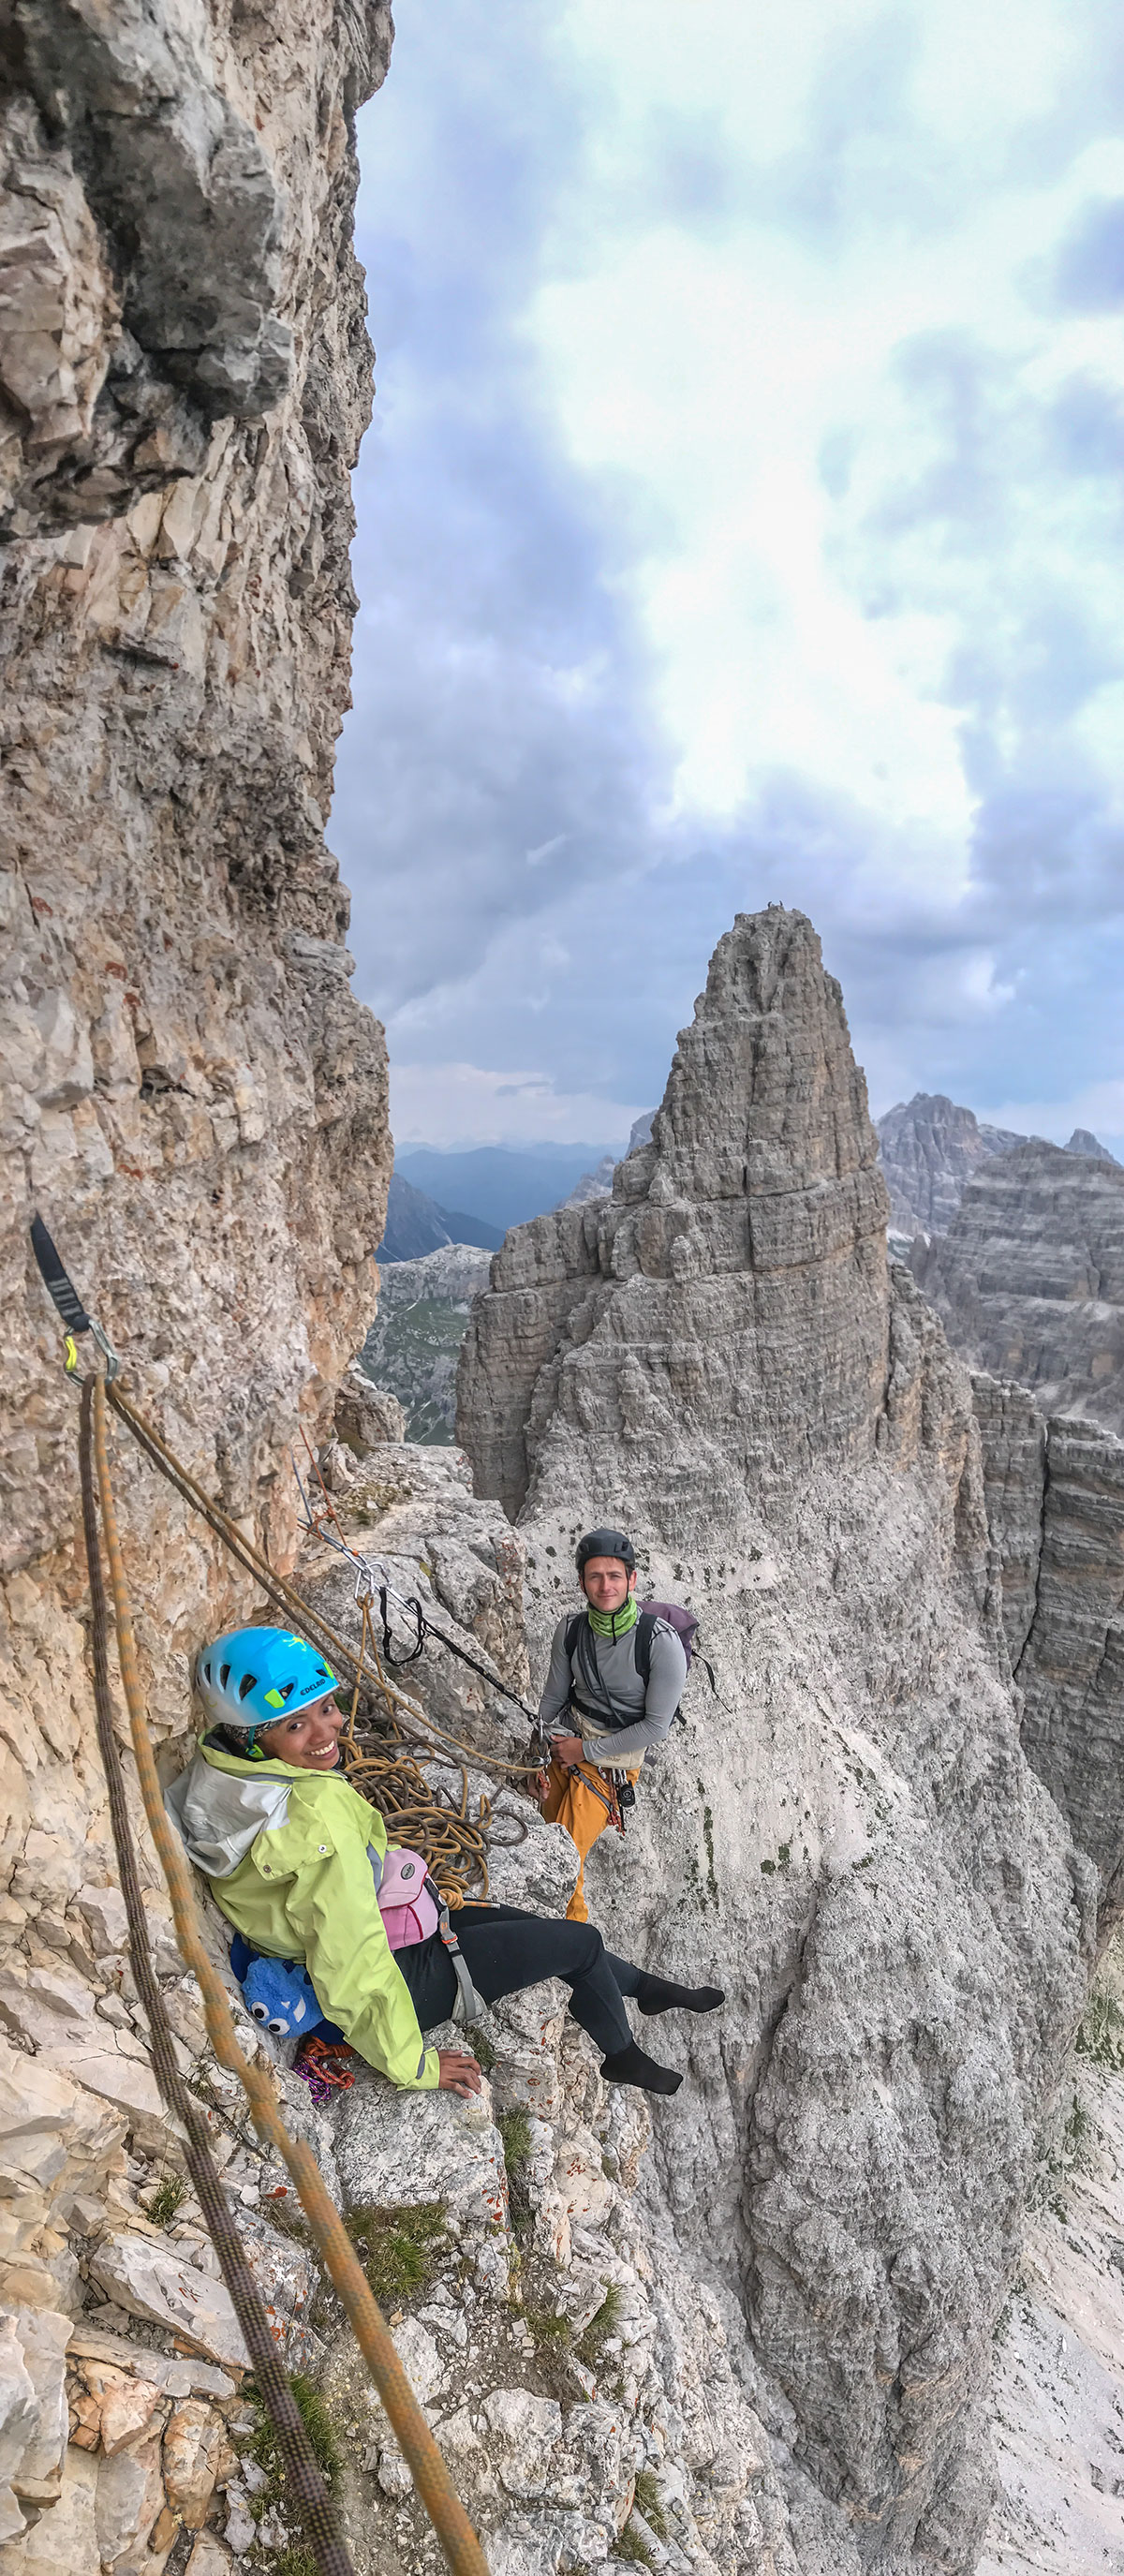 Small Pinnacle Three Peaks Dolomites, Italy - 